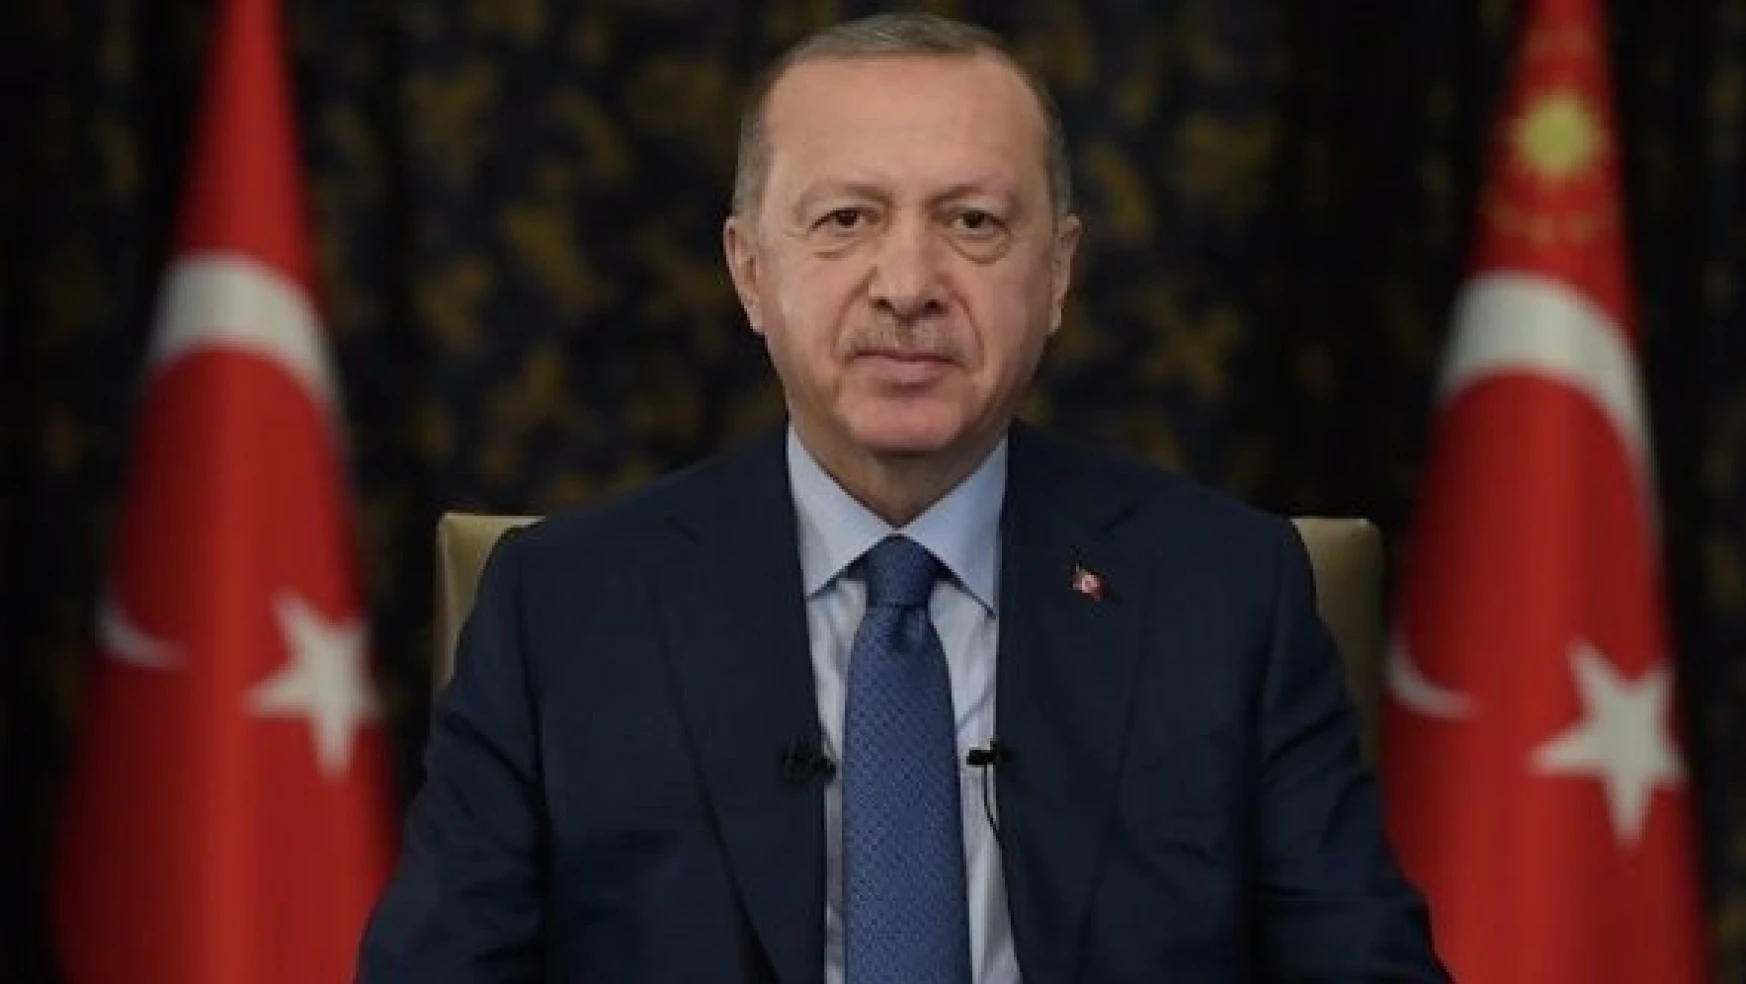 Cumhurbaşkanı Erdoğan'dan Muhtarlar Günü mesajı